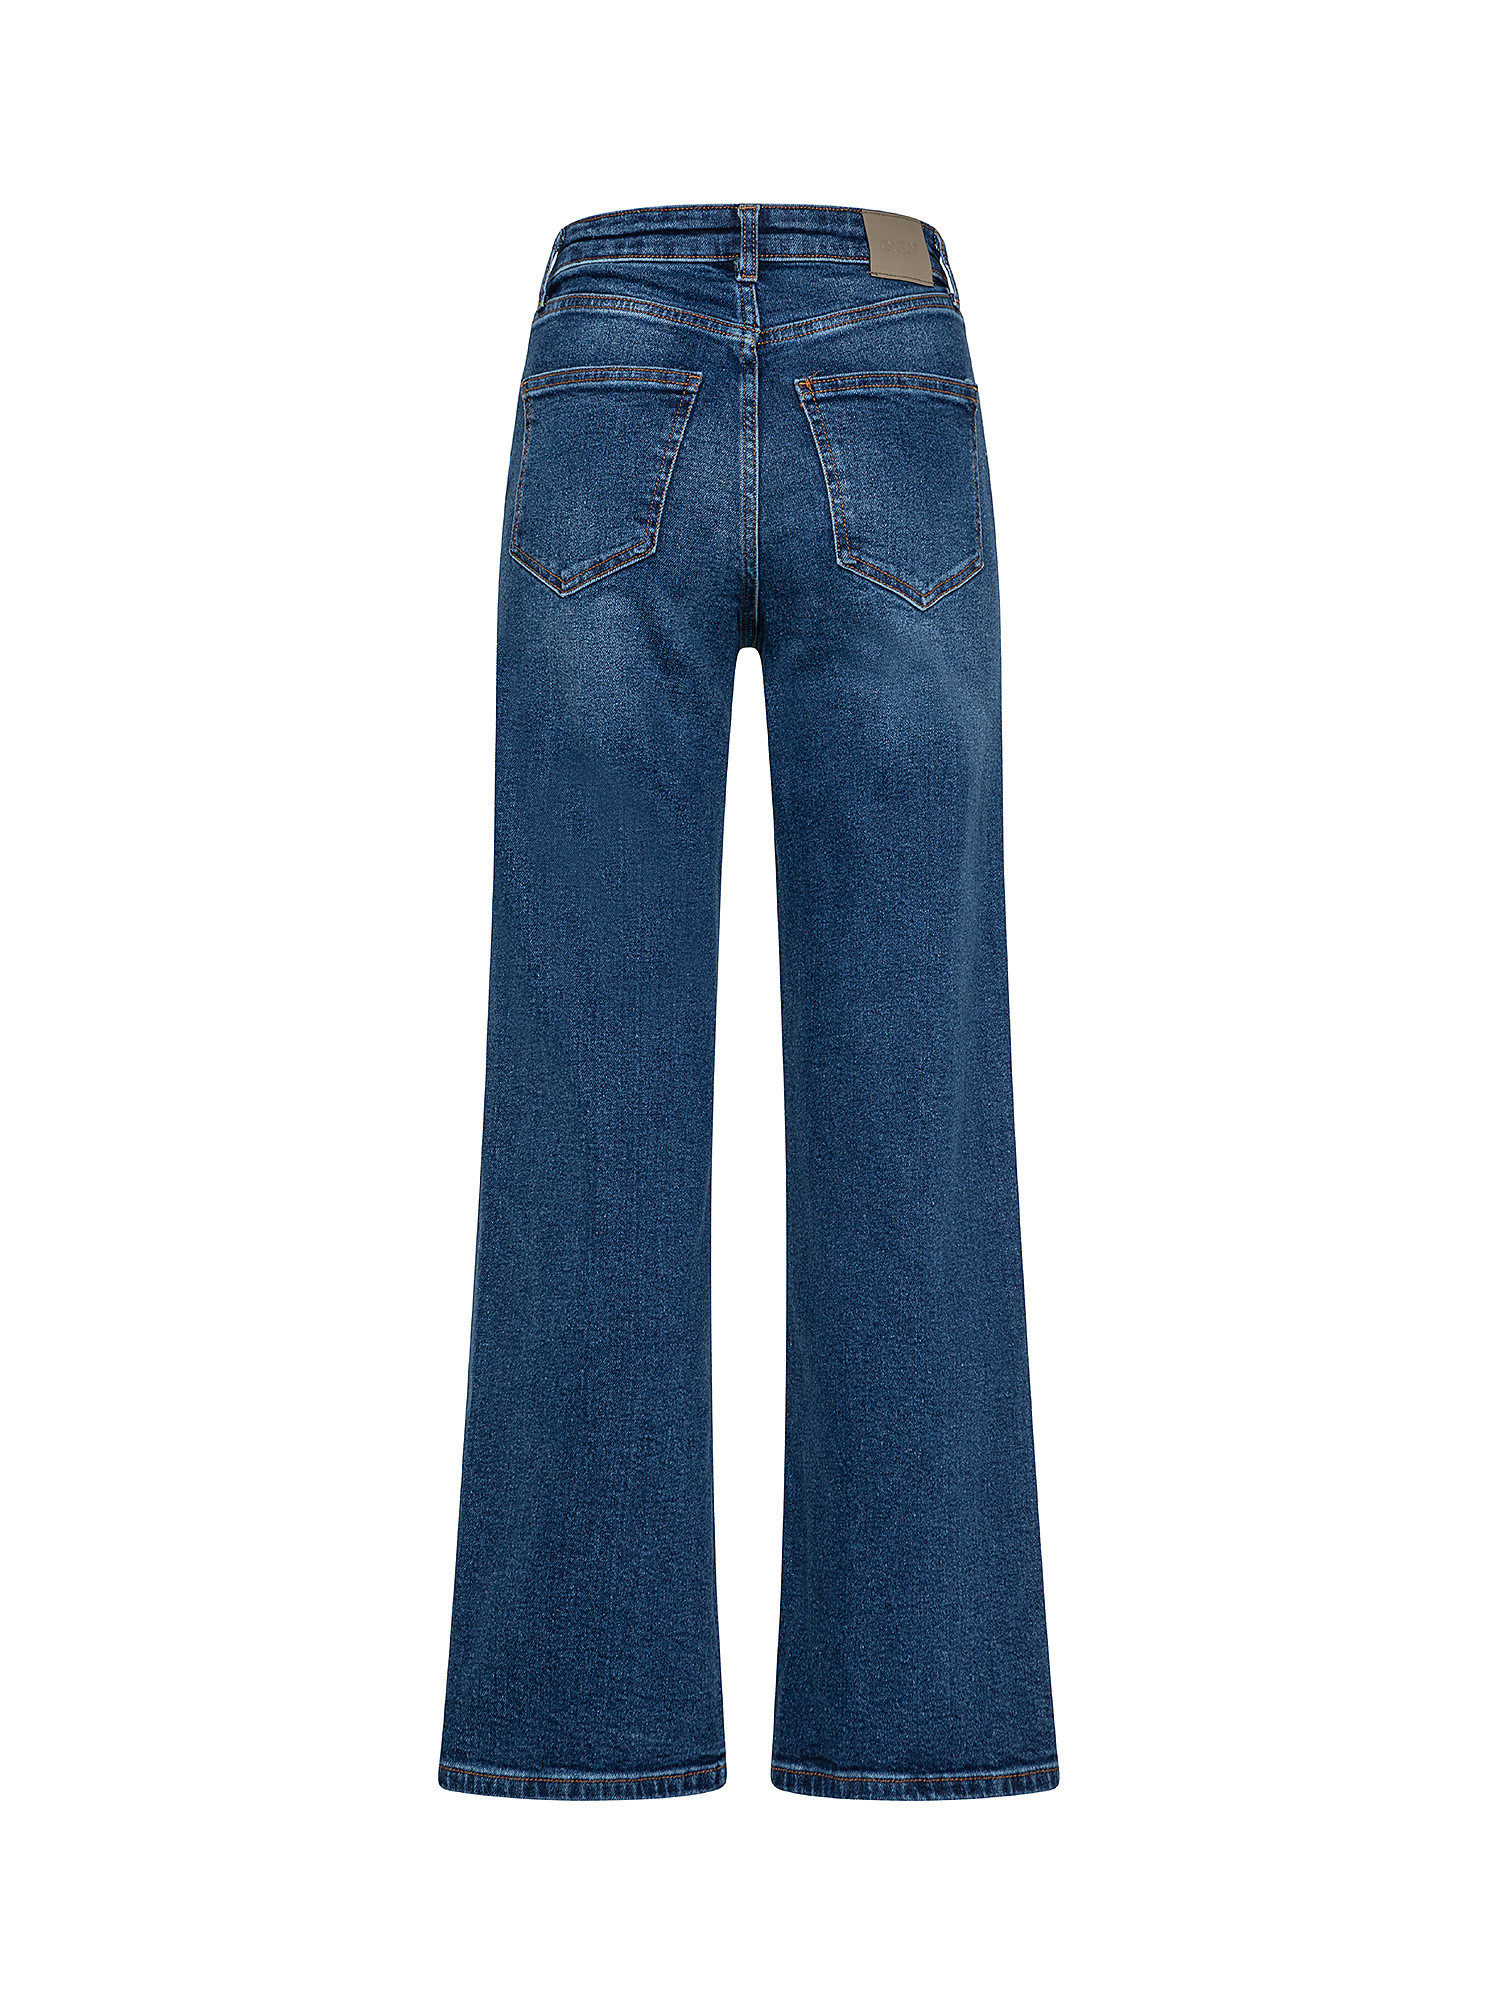 Jeans modello wide leg, Denim, large image number 1